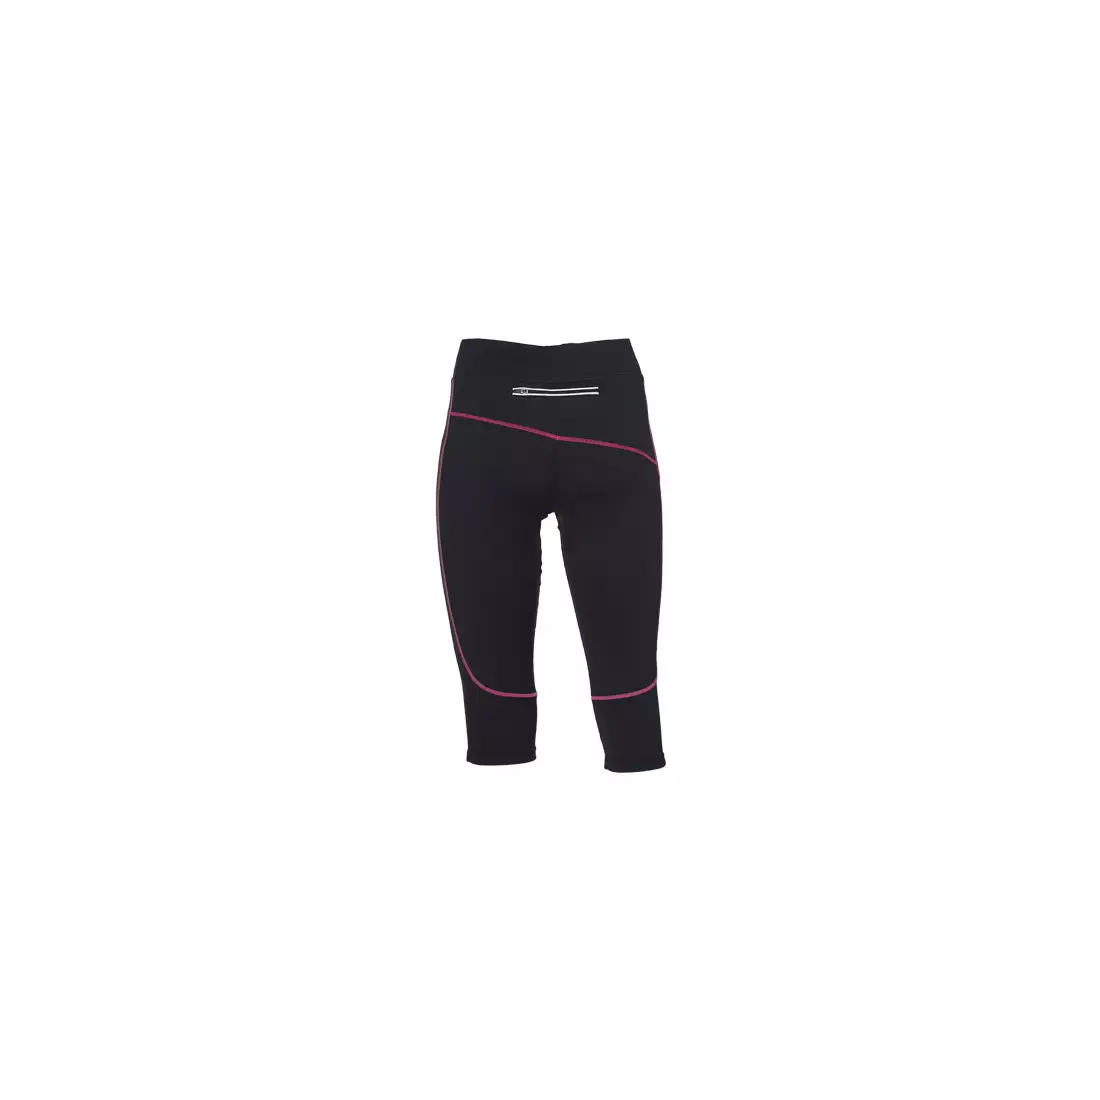 ROGELLI RUN MADILON - dámske 3/4 bežecké šortky - farba: Čierna a ružová